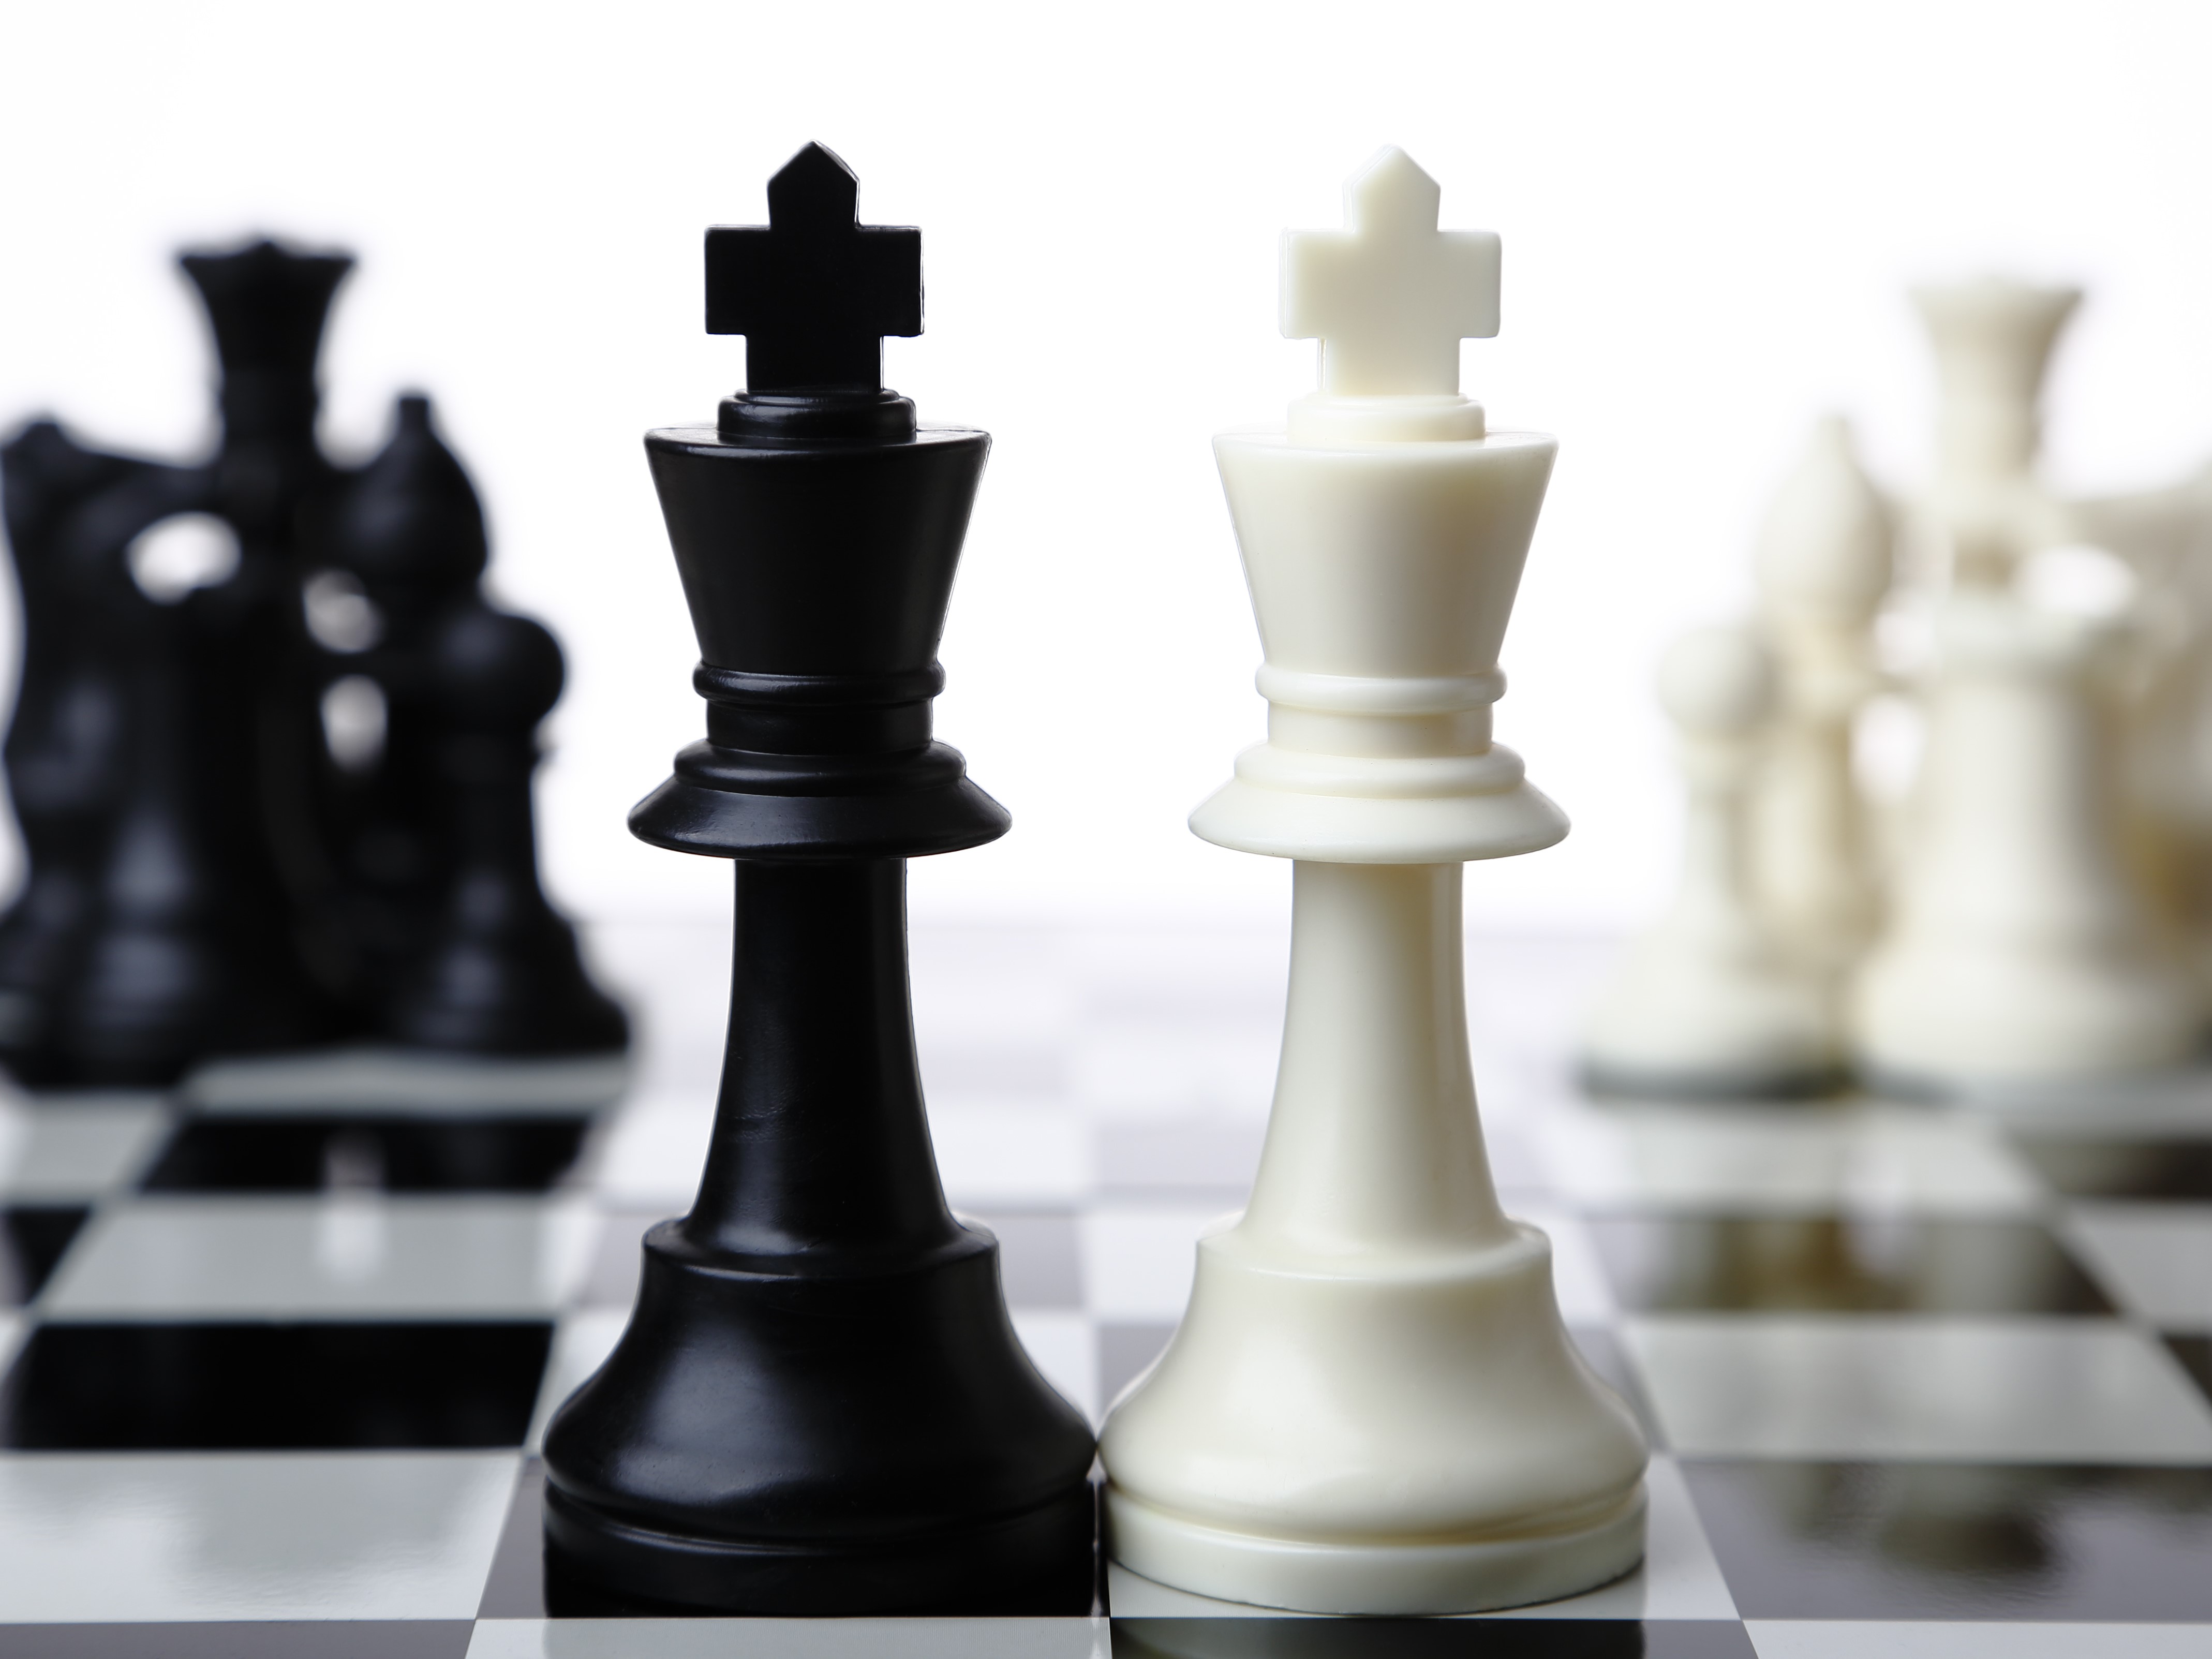 До 8 марта пройдет прием заявок на участие в Чемпионате города Пскова по быстрым шахматам и блицу среди женщин.